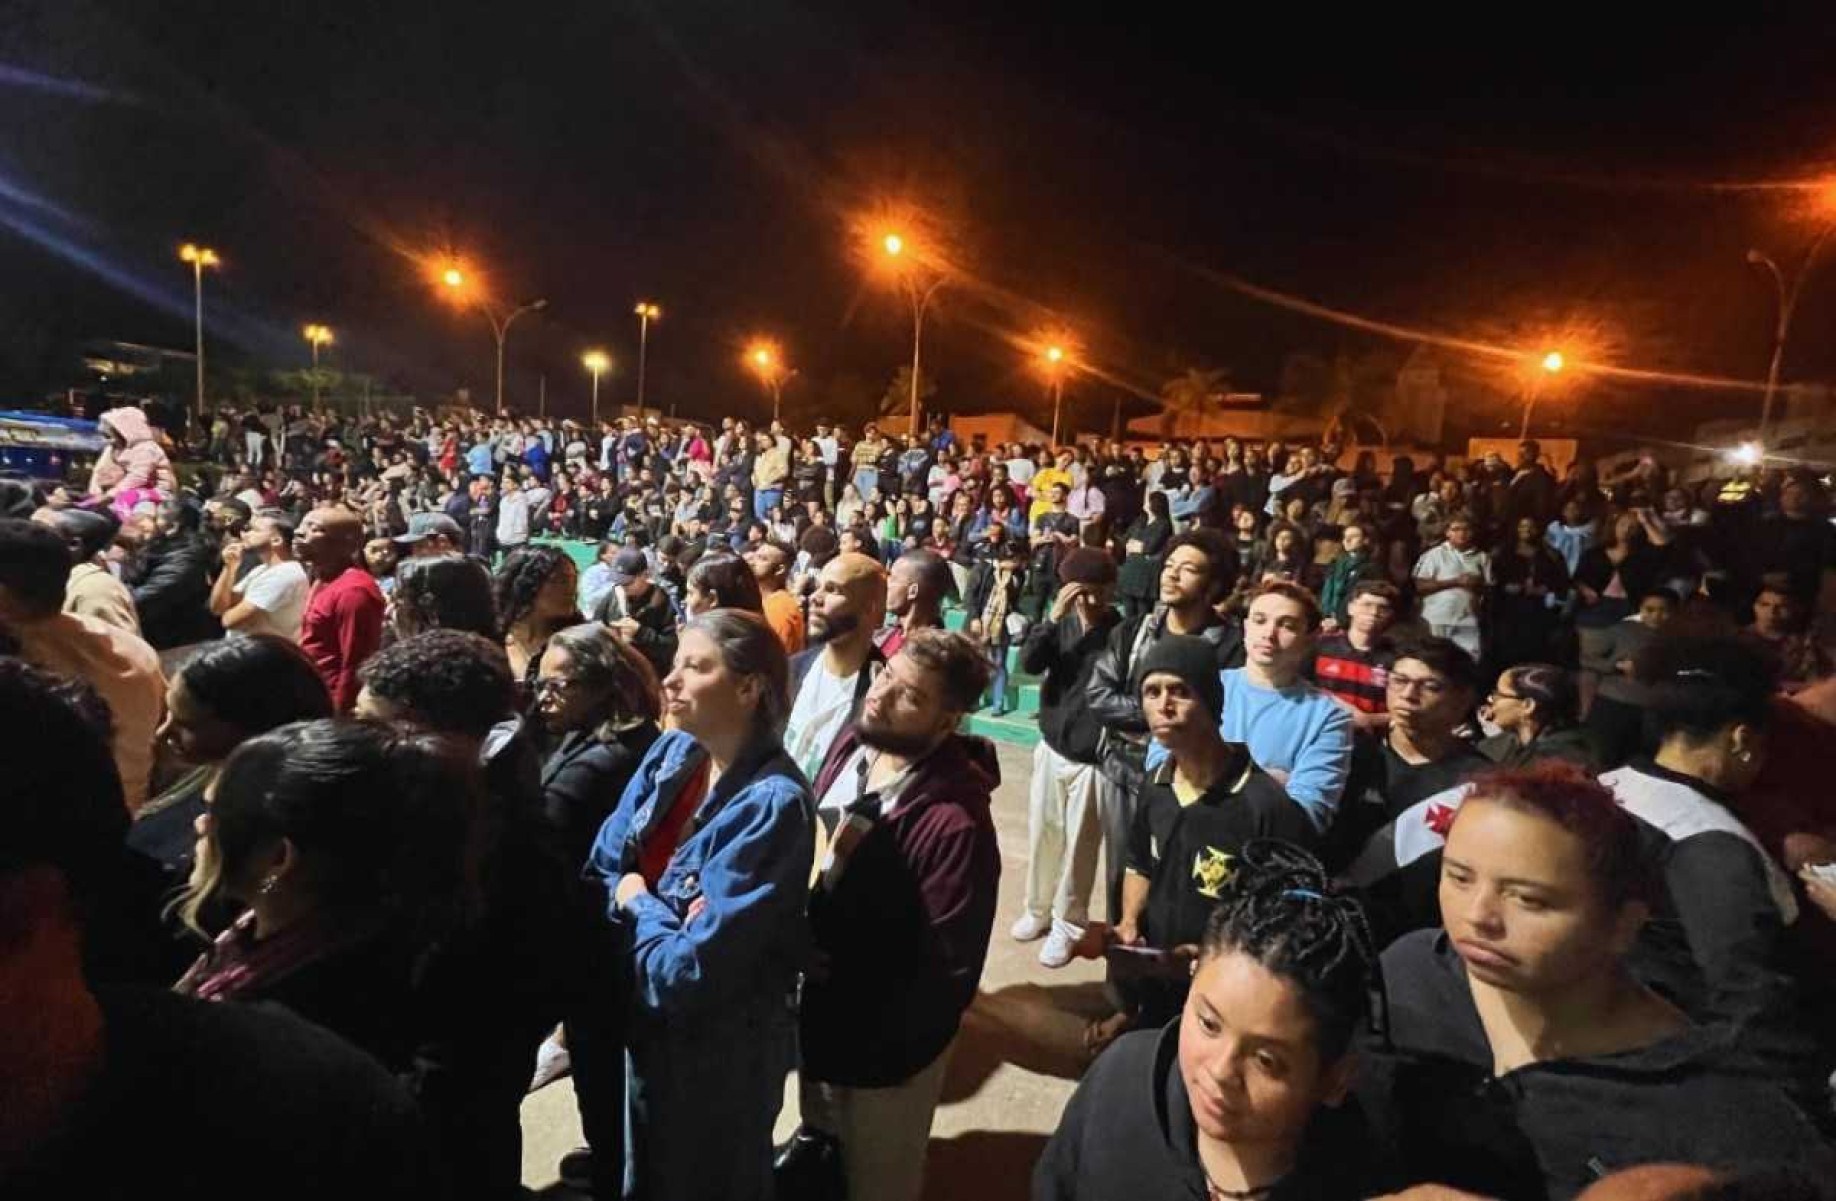 Grande público assiste ao espetáculo da Arroxa o Nó fora das arquibancadas, no Paranoá.  